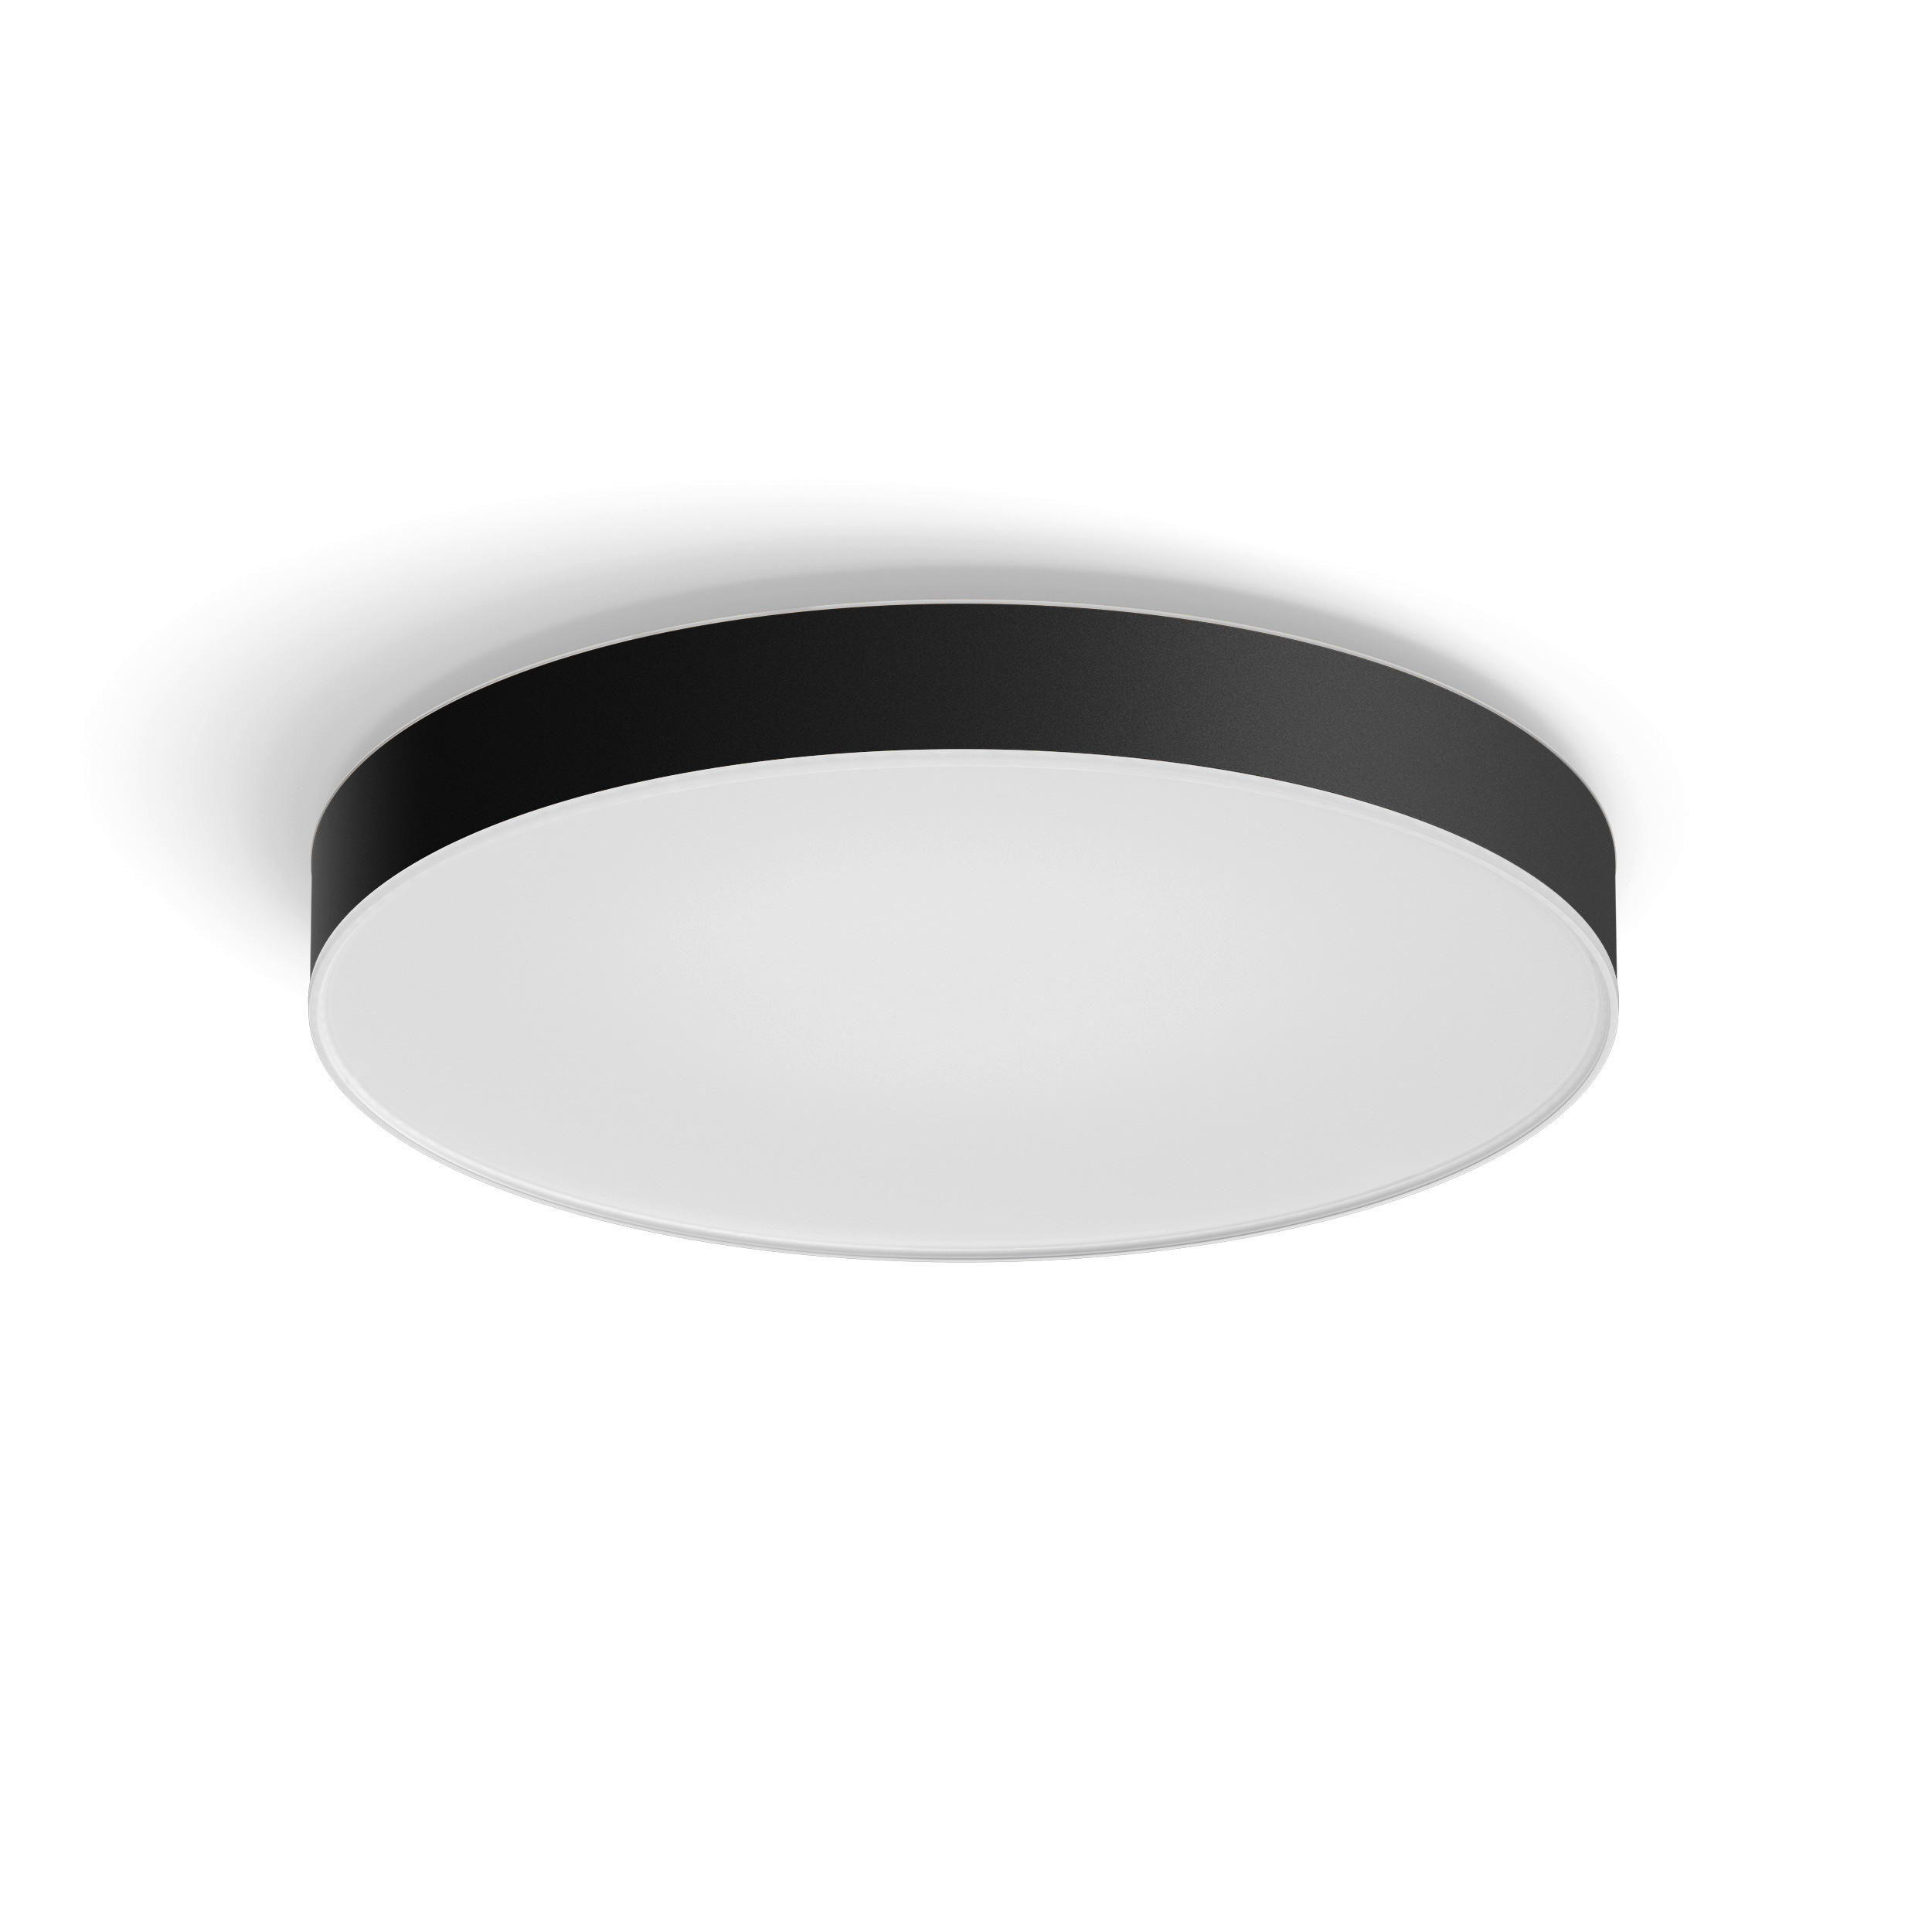 LED-DECKENLEUCHTE 55,1/8,4 cm    - Schwarz, Design, Metall (55,1/8,4cm) - Philips HUE